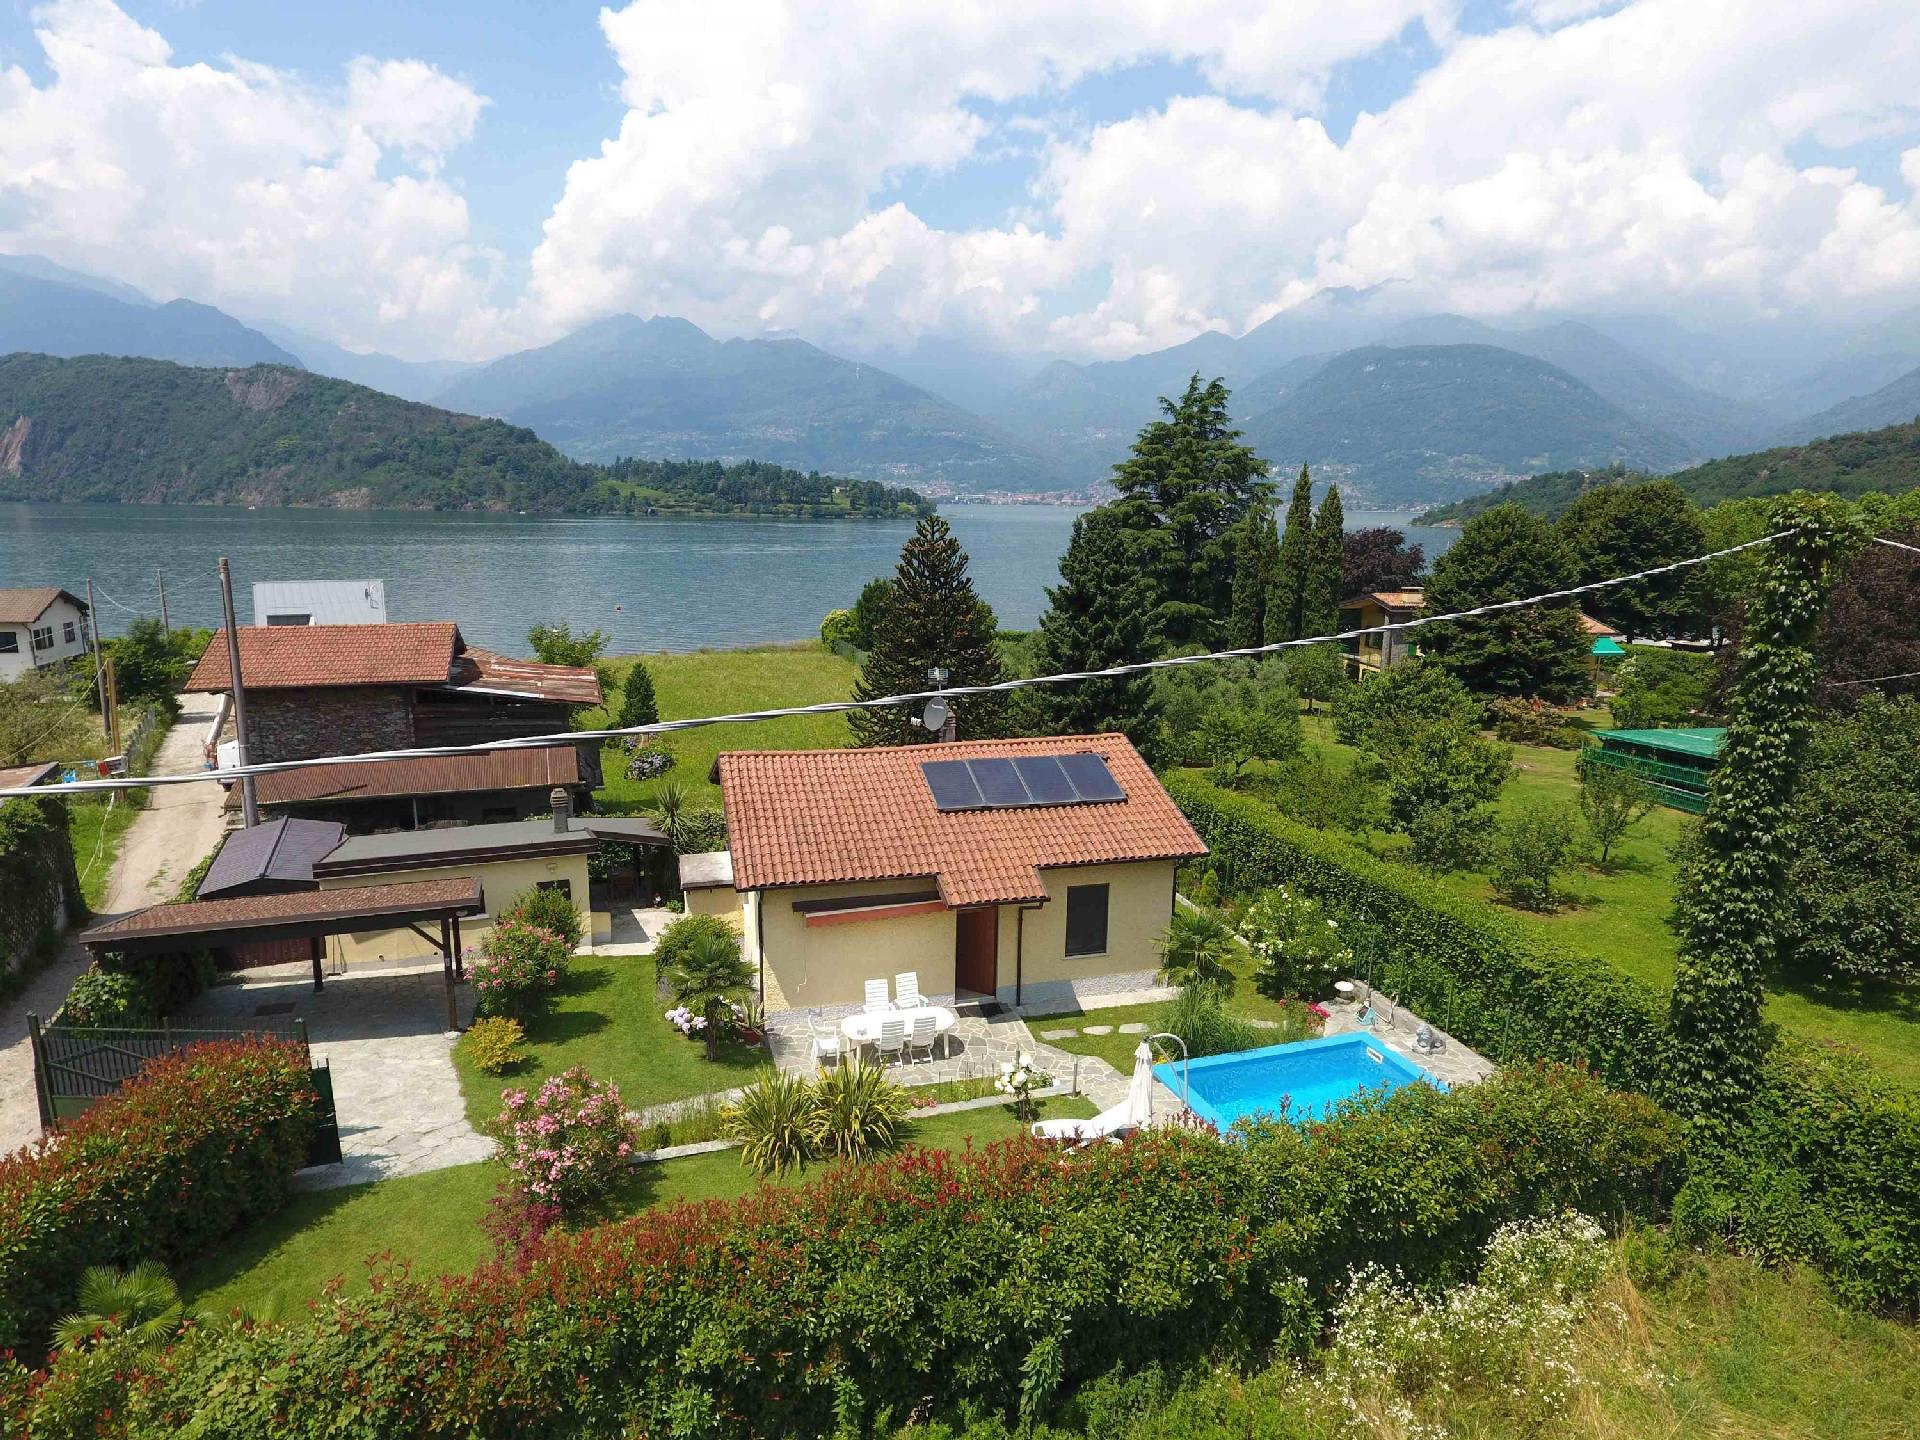 Ferienvilla am See mit Pool Ferienhaus in Italien